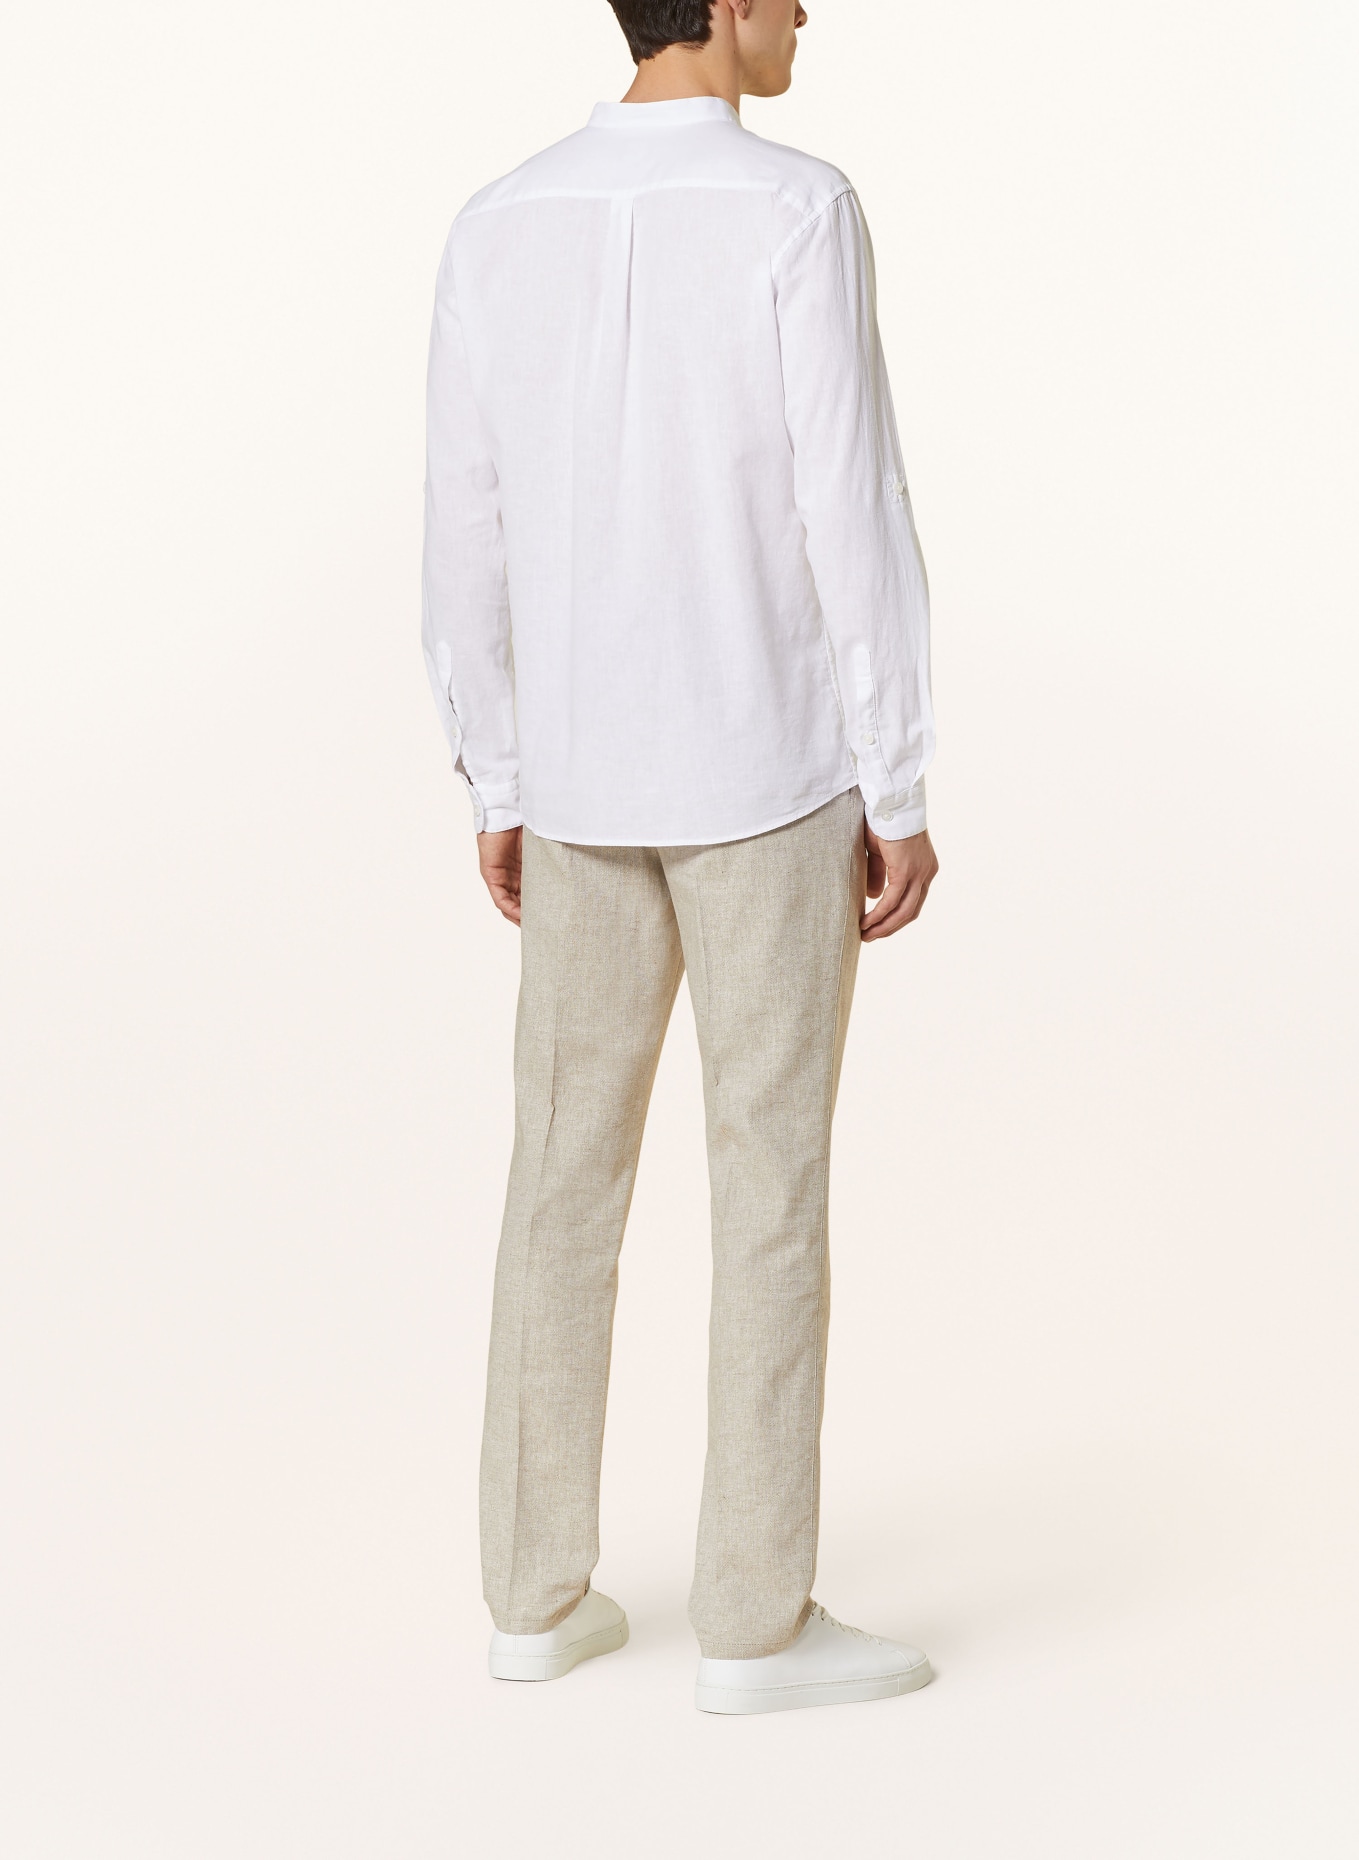 STRELLSON Hemd CONELL Comfort Fit mit Leinen und Stehkragen, Farbe: WEISS (Bild 3)